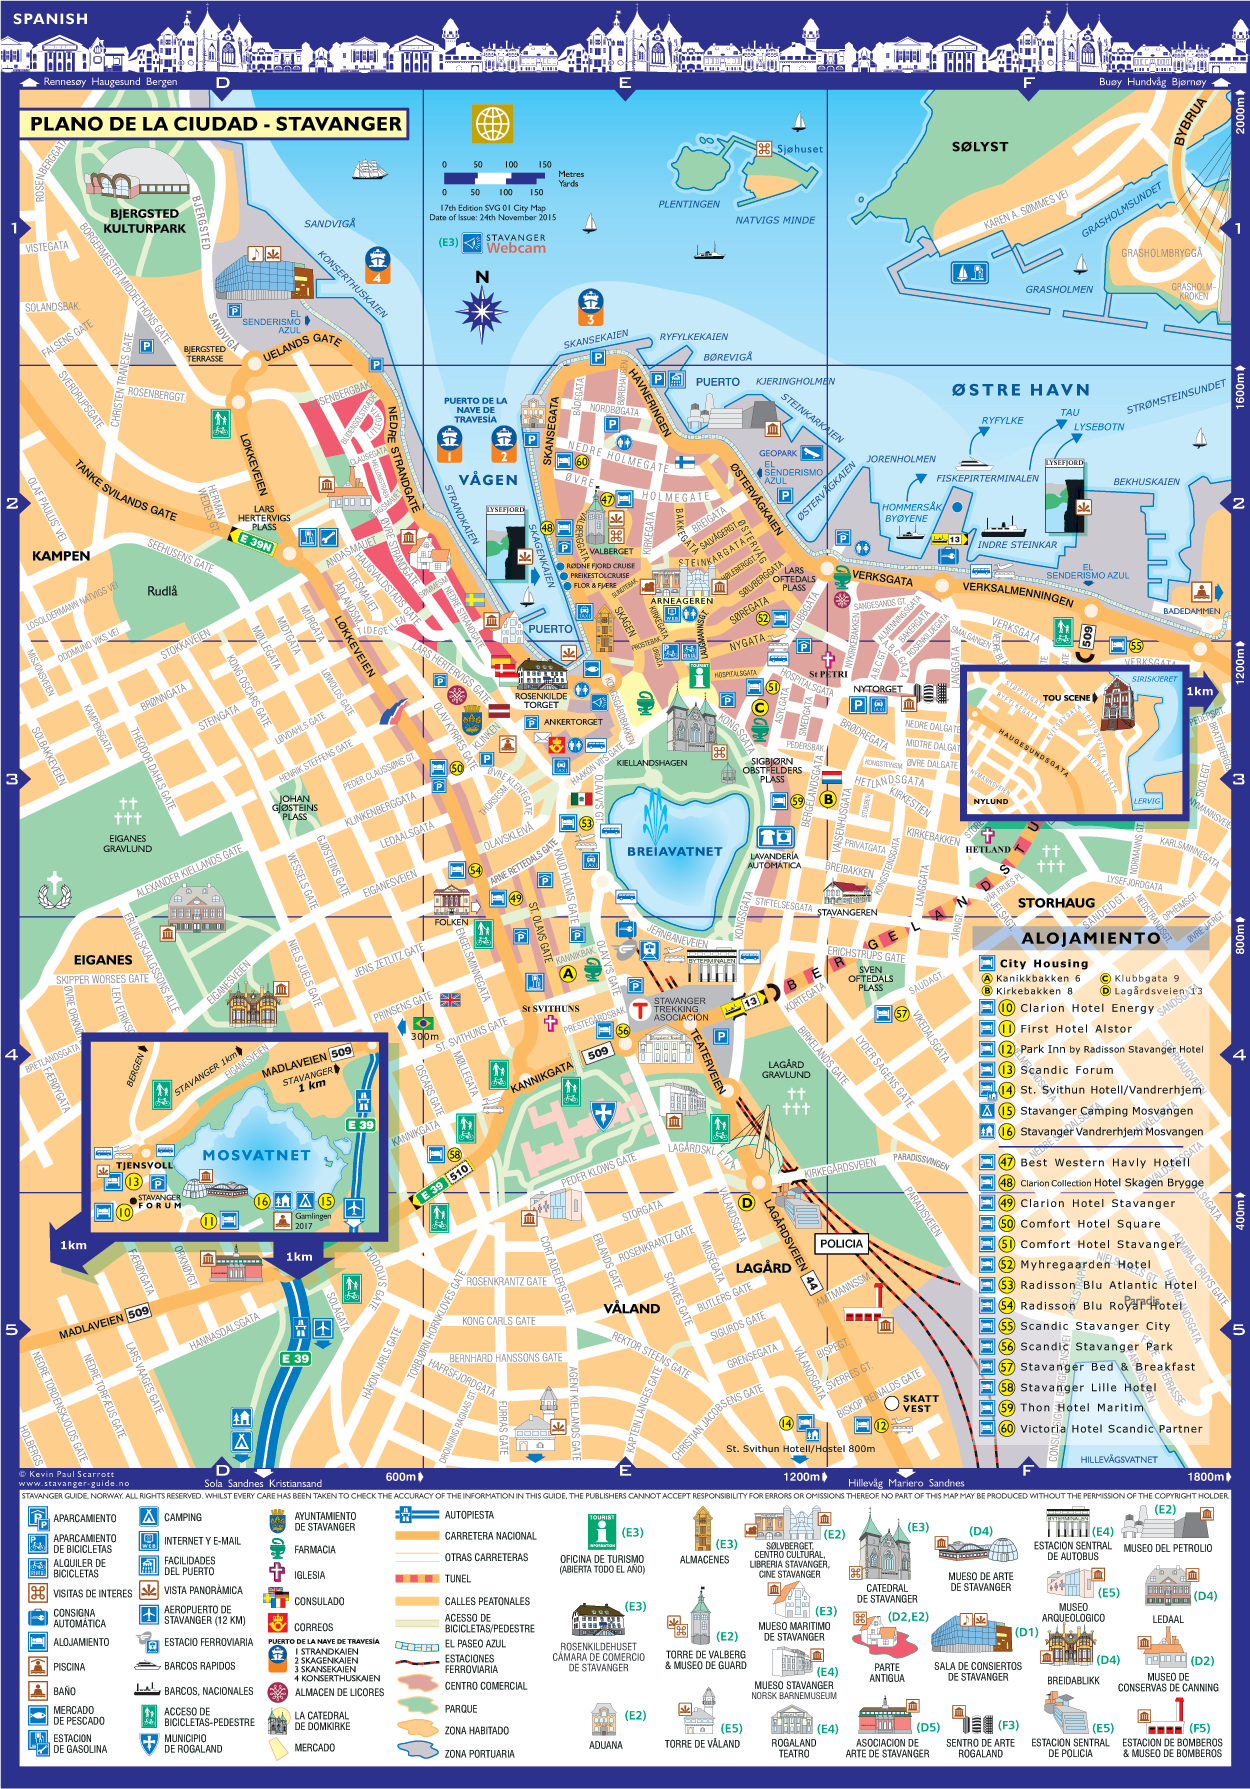 Stavanger Plano de la Ciudad